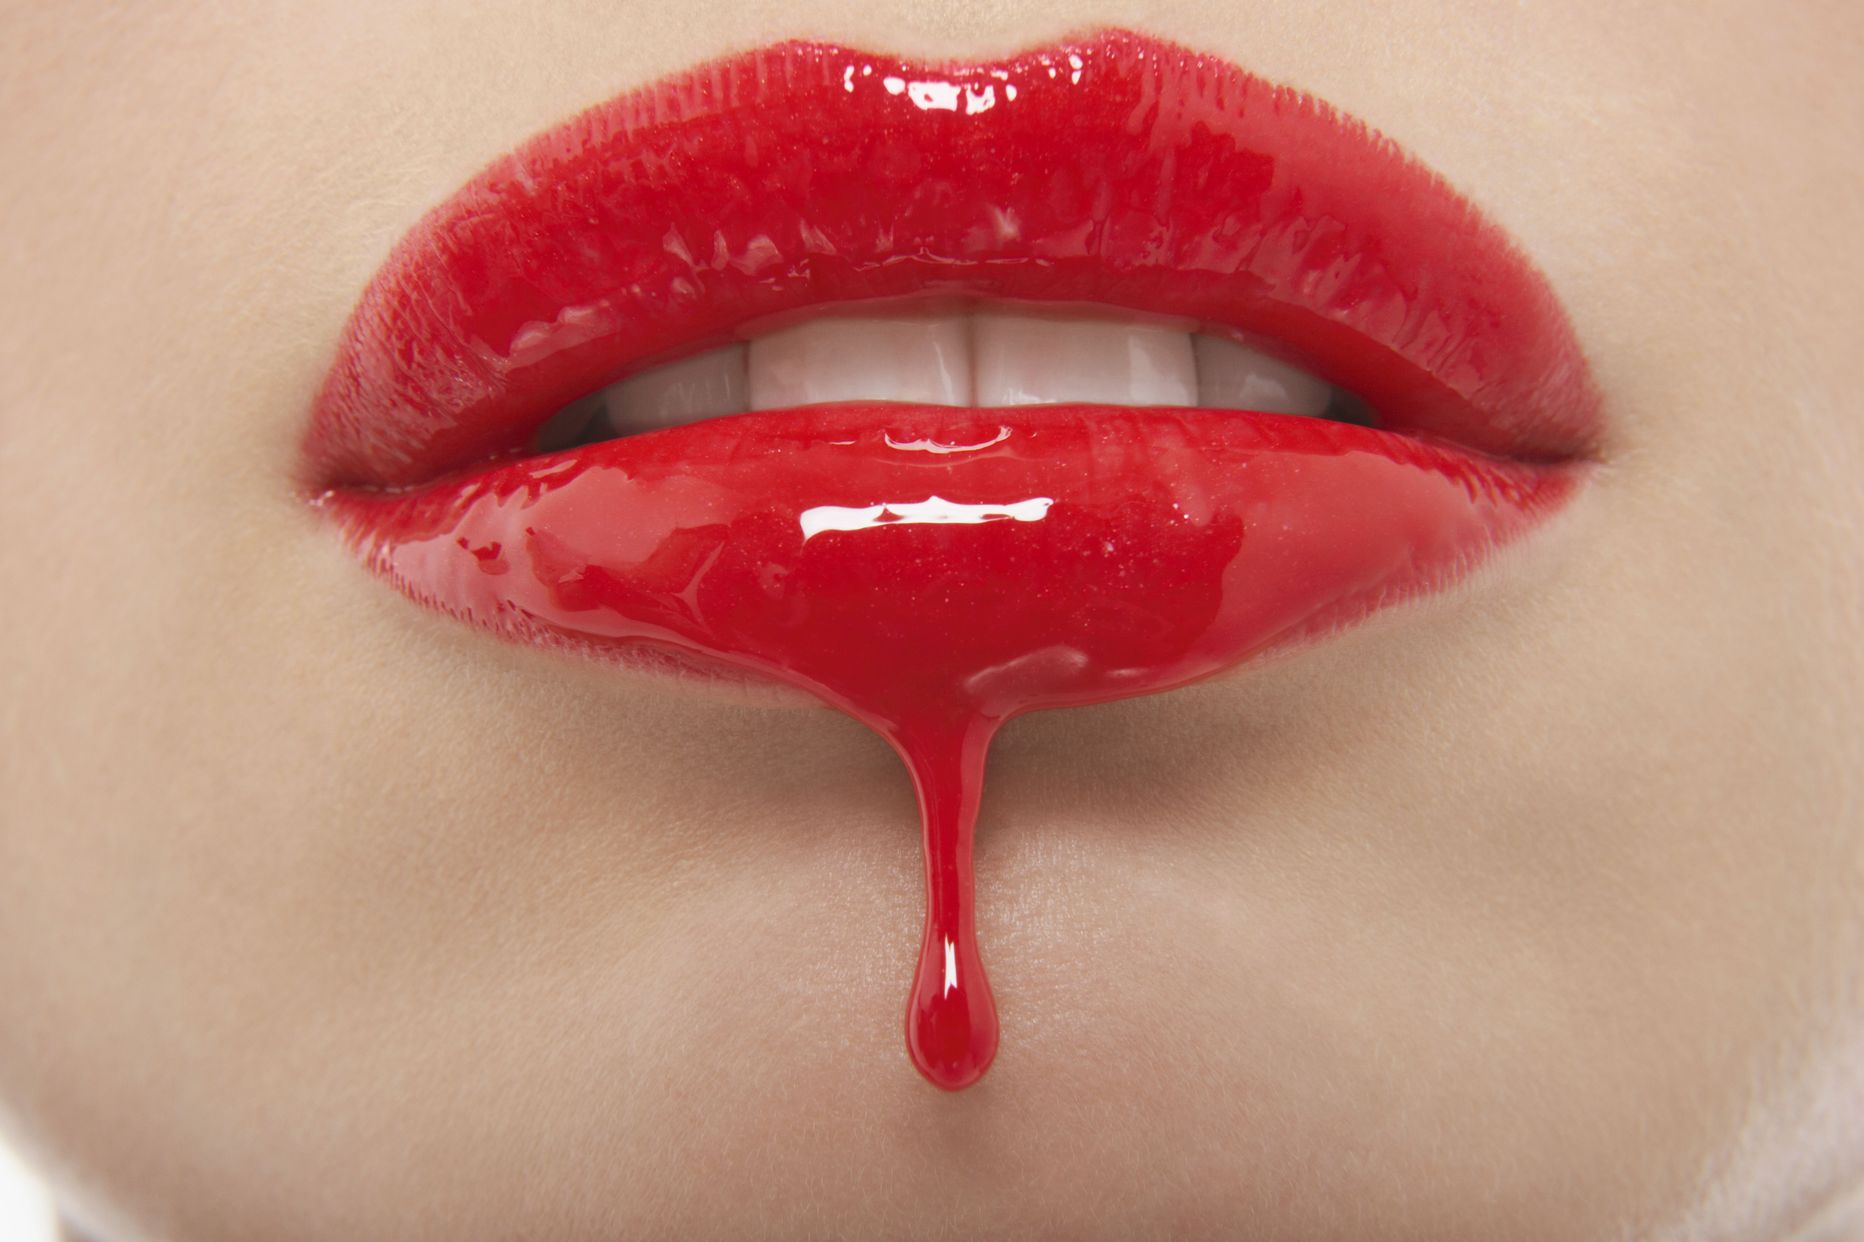 Pärast püsimeigi protseduuri lubas ilusalong naisele ilusat punast huulevärvi.